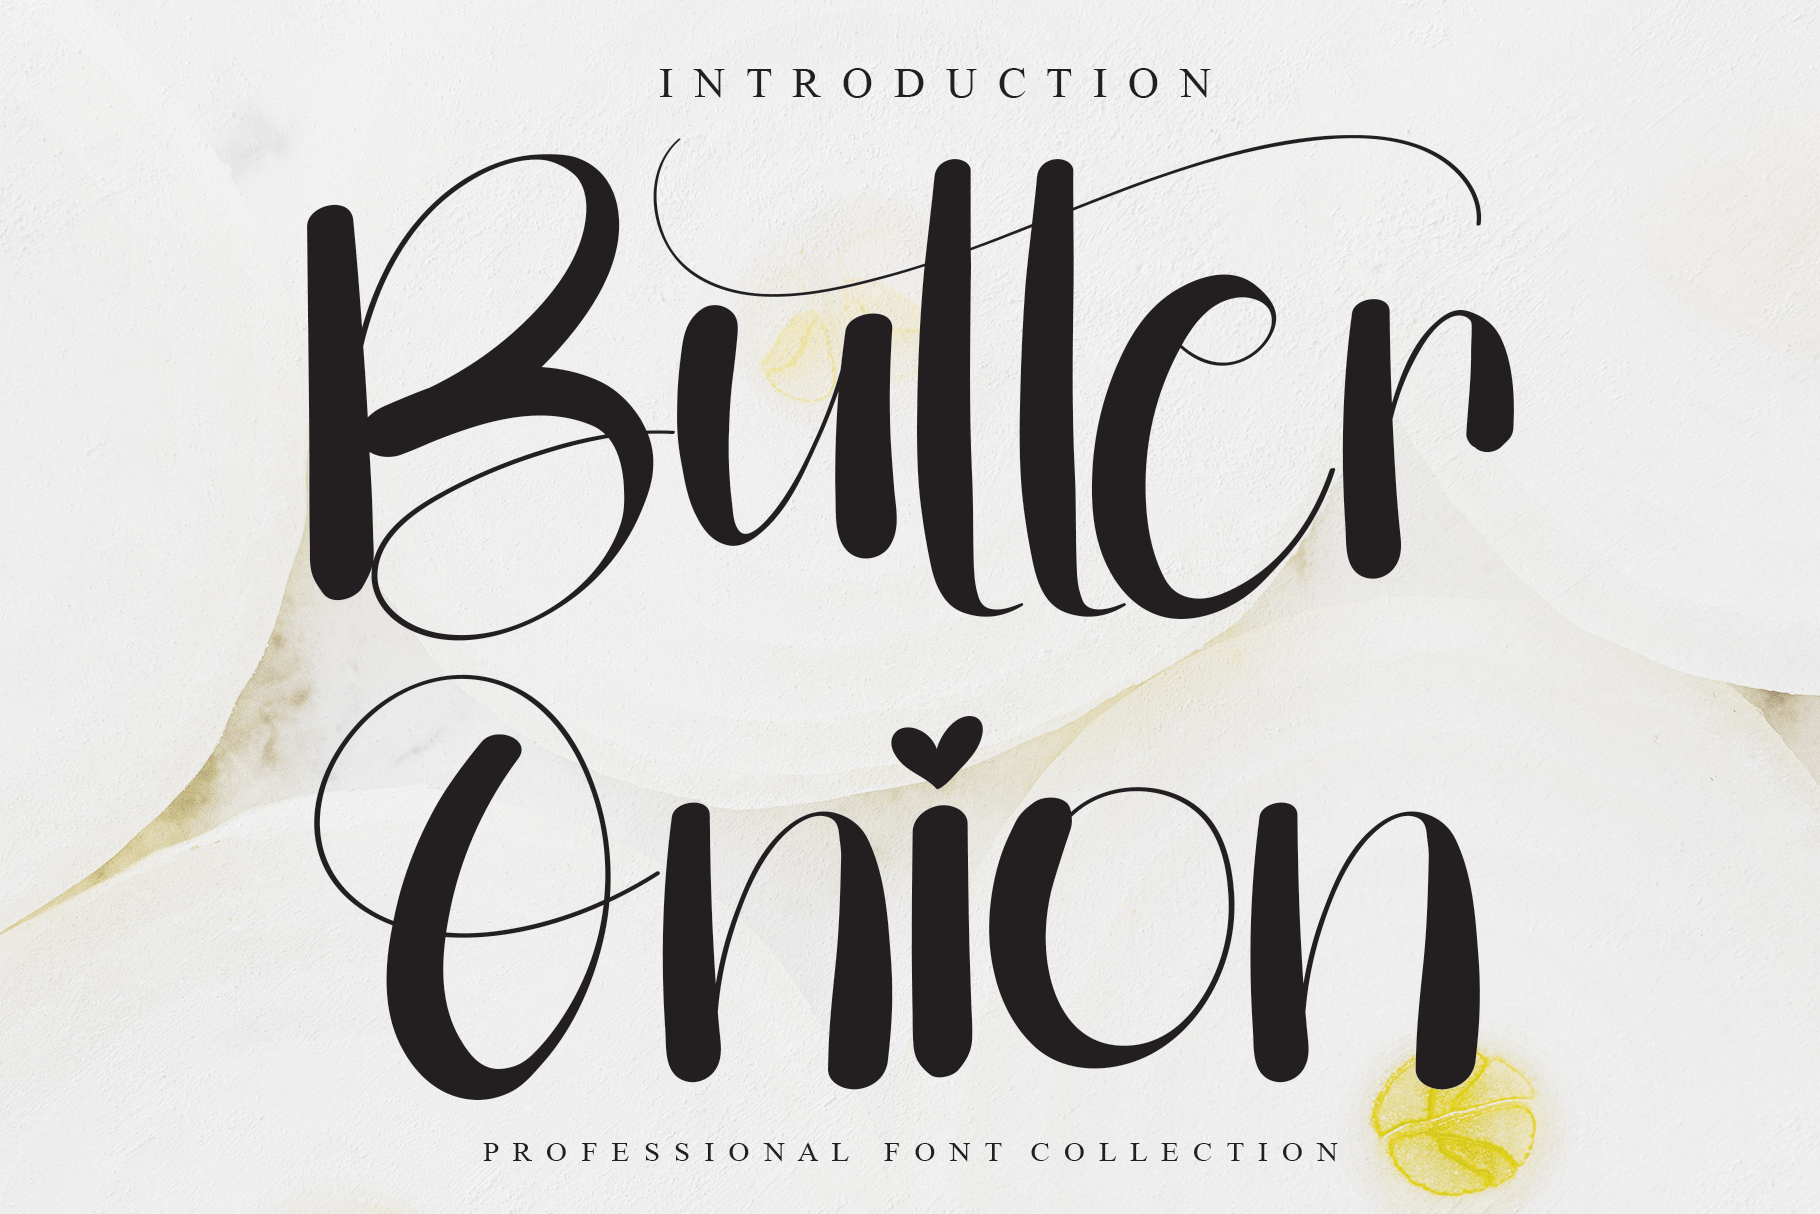 Butter Onion